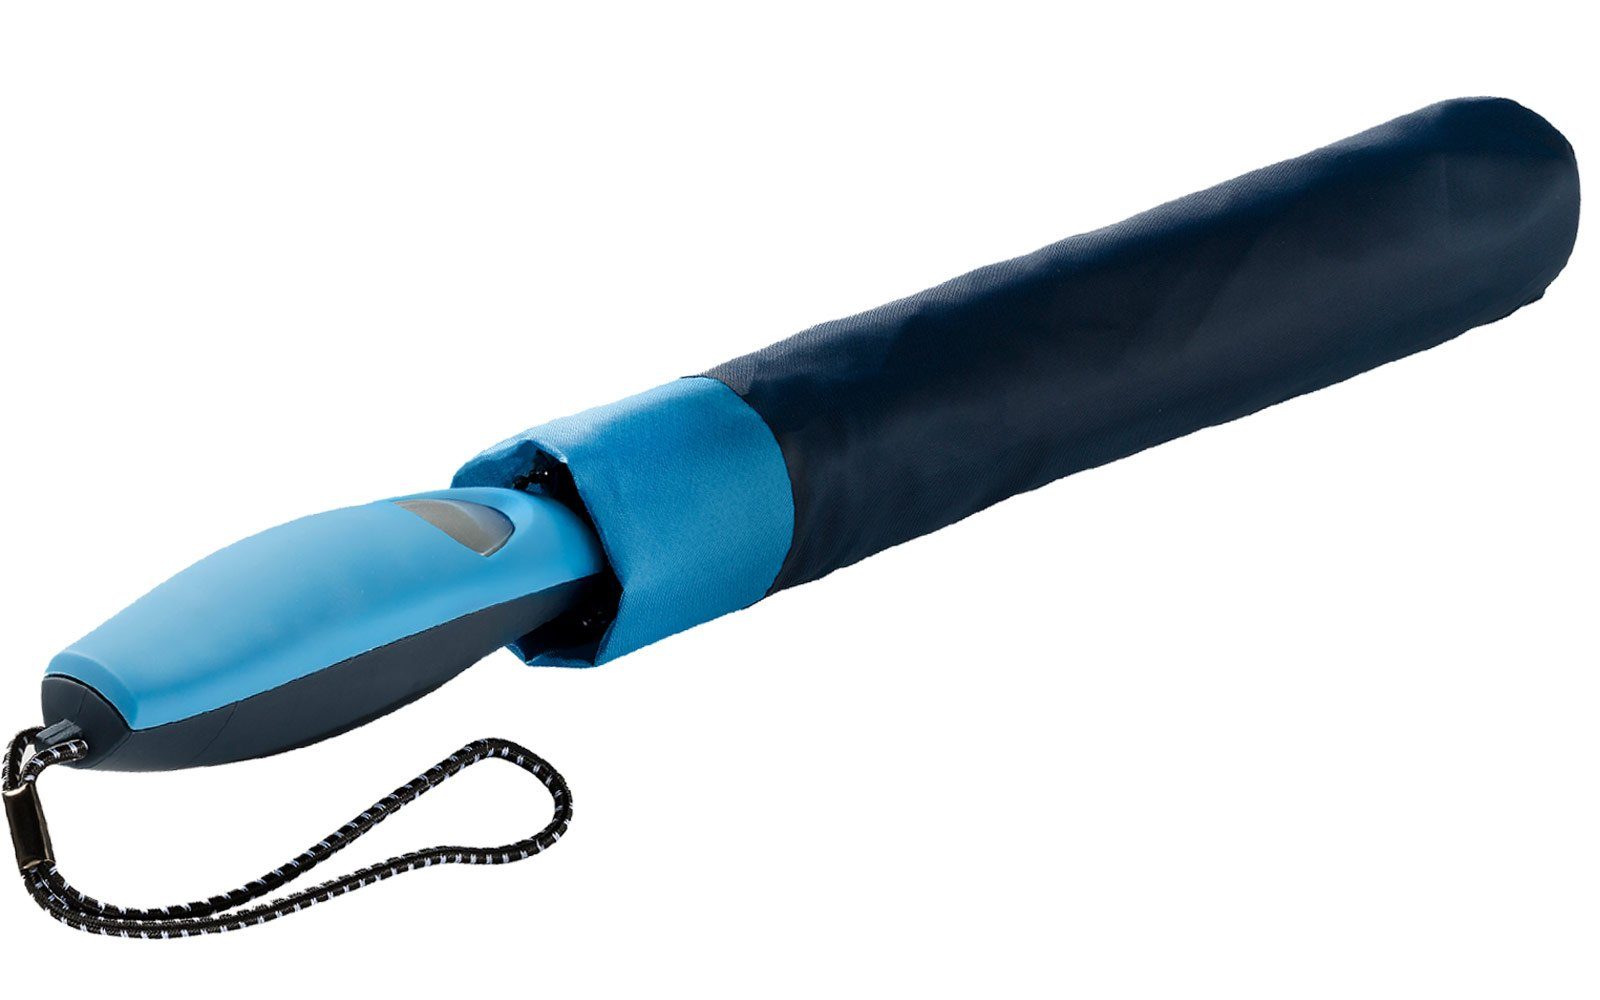 Impliva Taschenregenschirm Falconetti Auf-Automatik Griff, passender farblich navy-blau auffallend